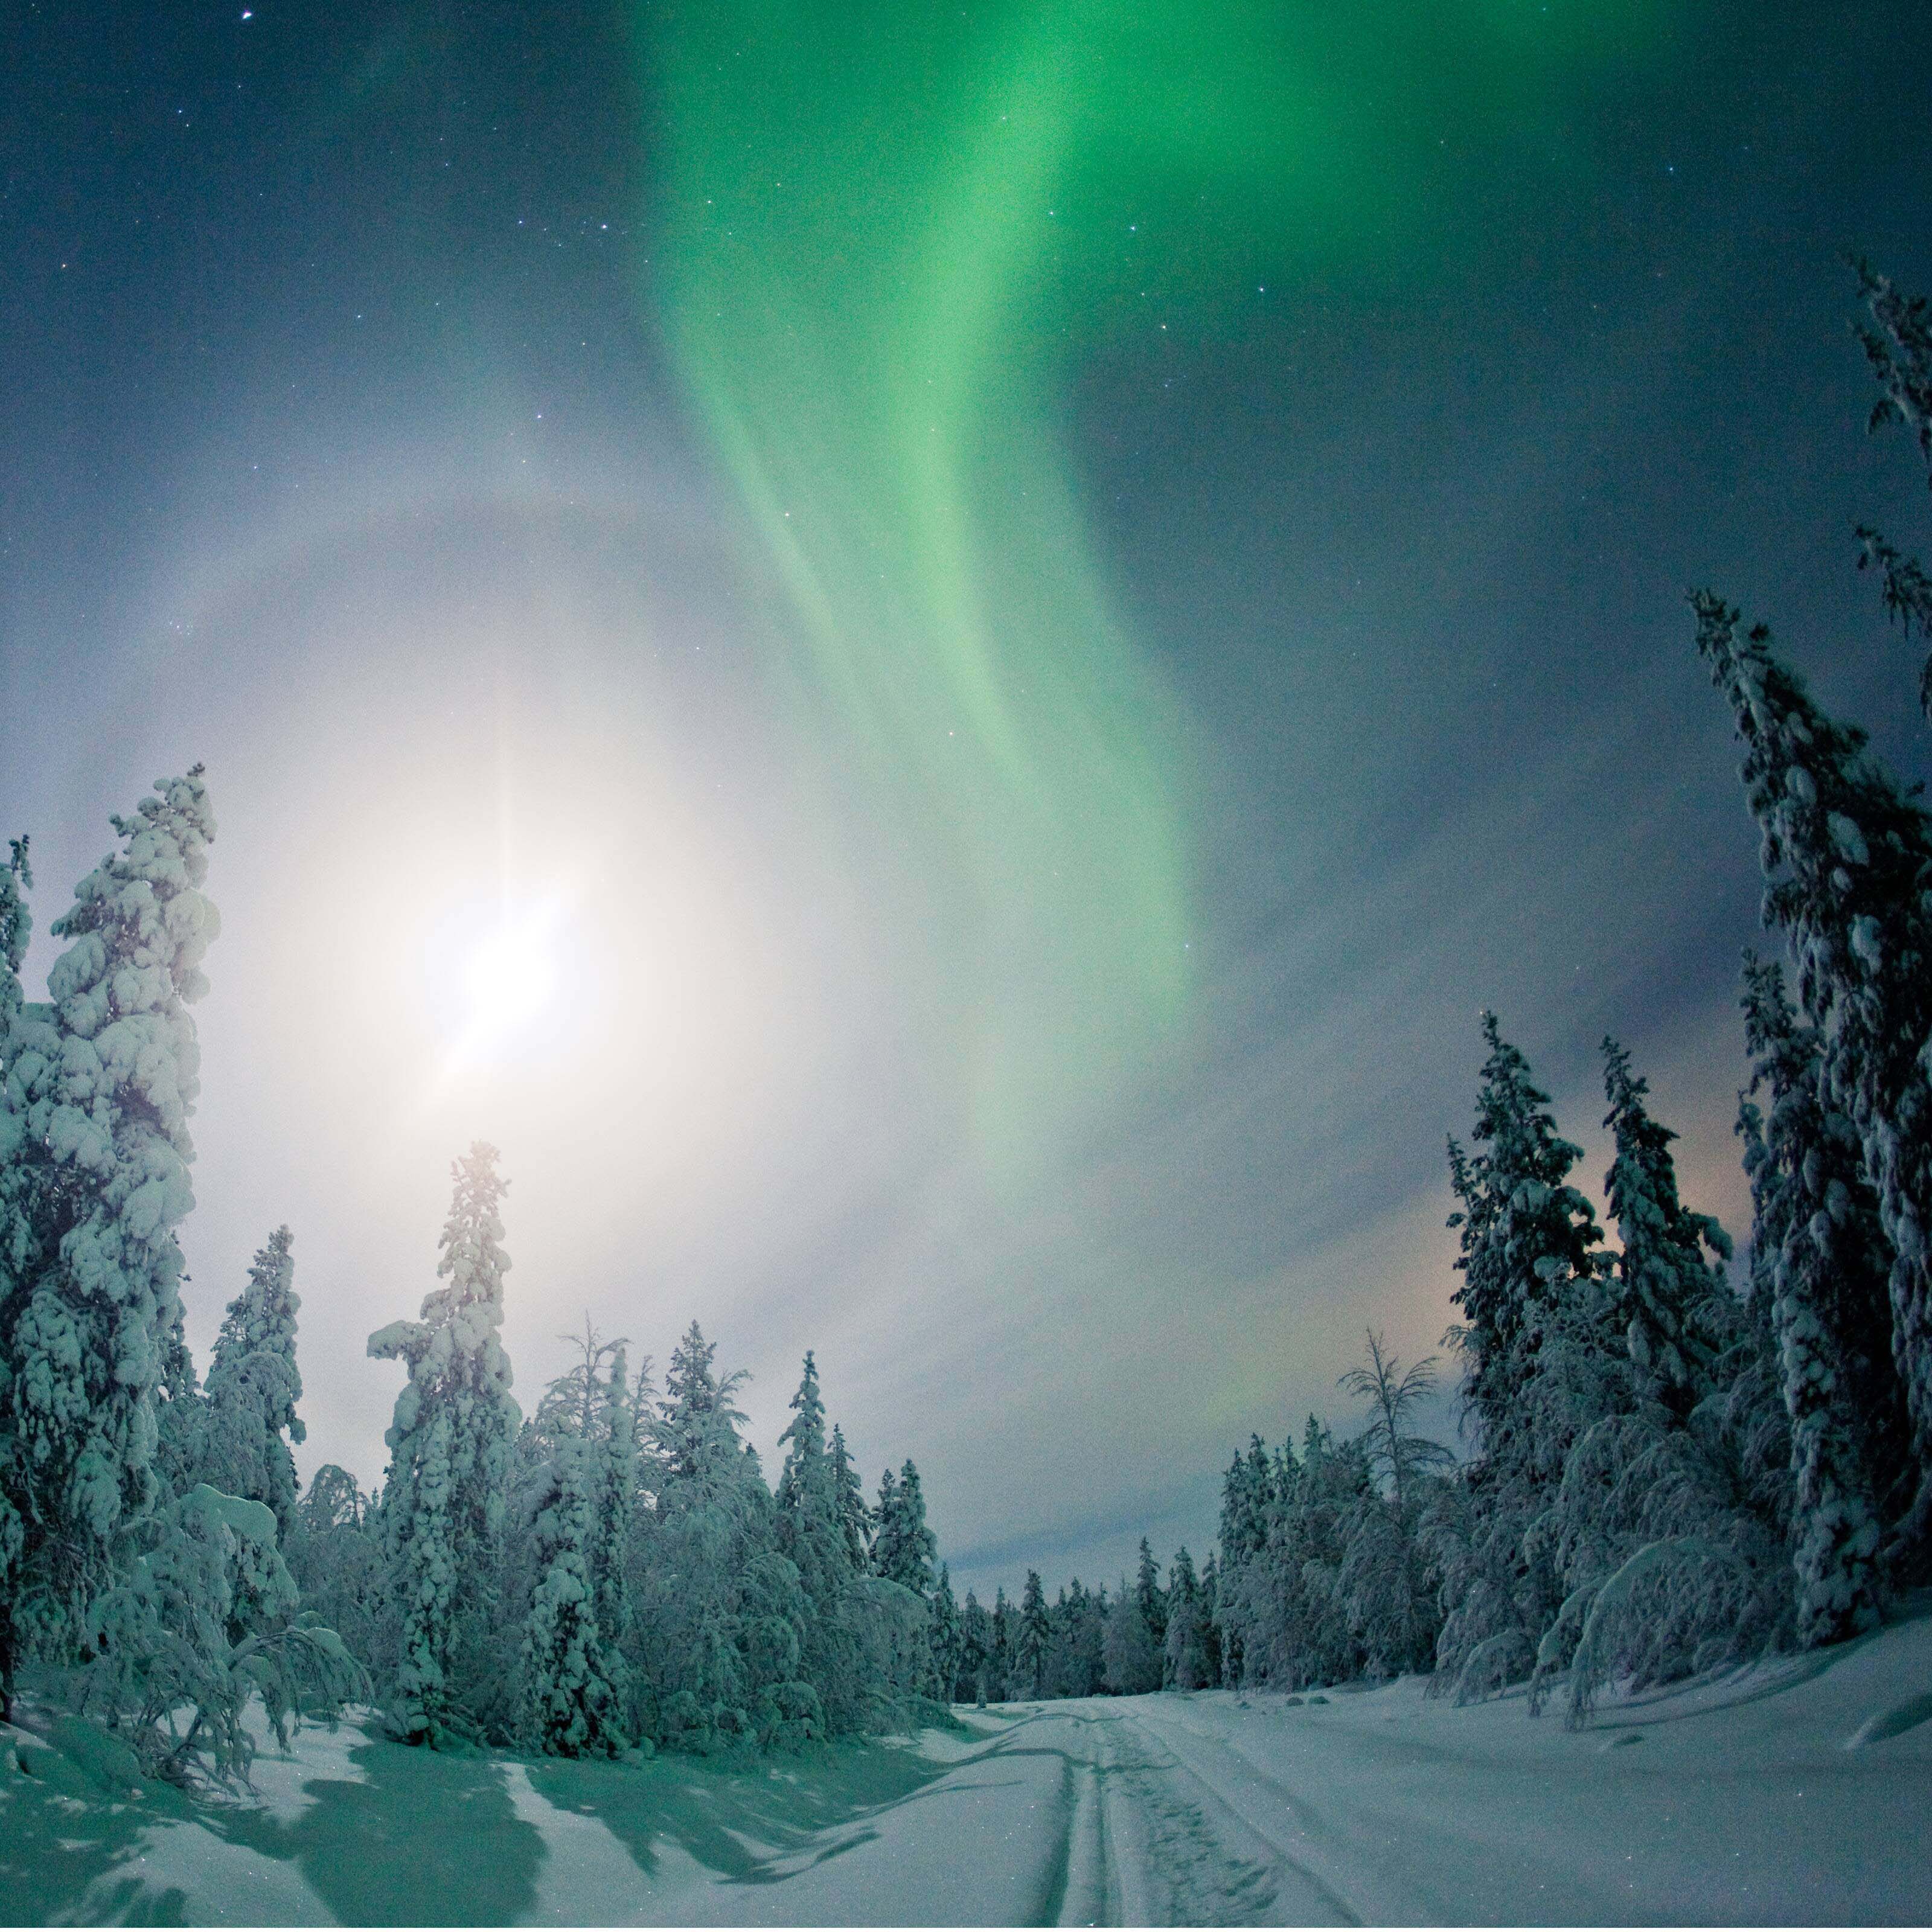 https://www.visitfinland.com/dam/jcr:6376af5c-6874-4097-b614-3104e35d76e6/Lapland_Northern_Lights_optimized.jpg